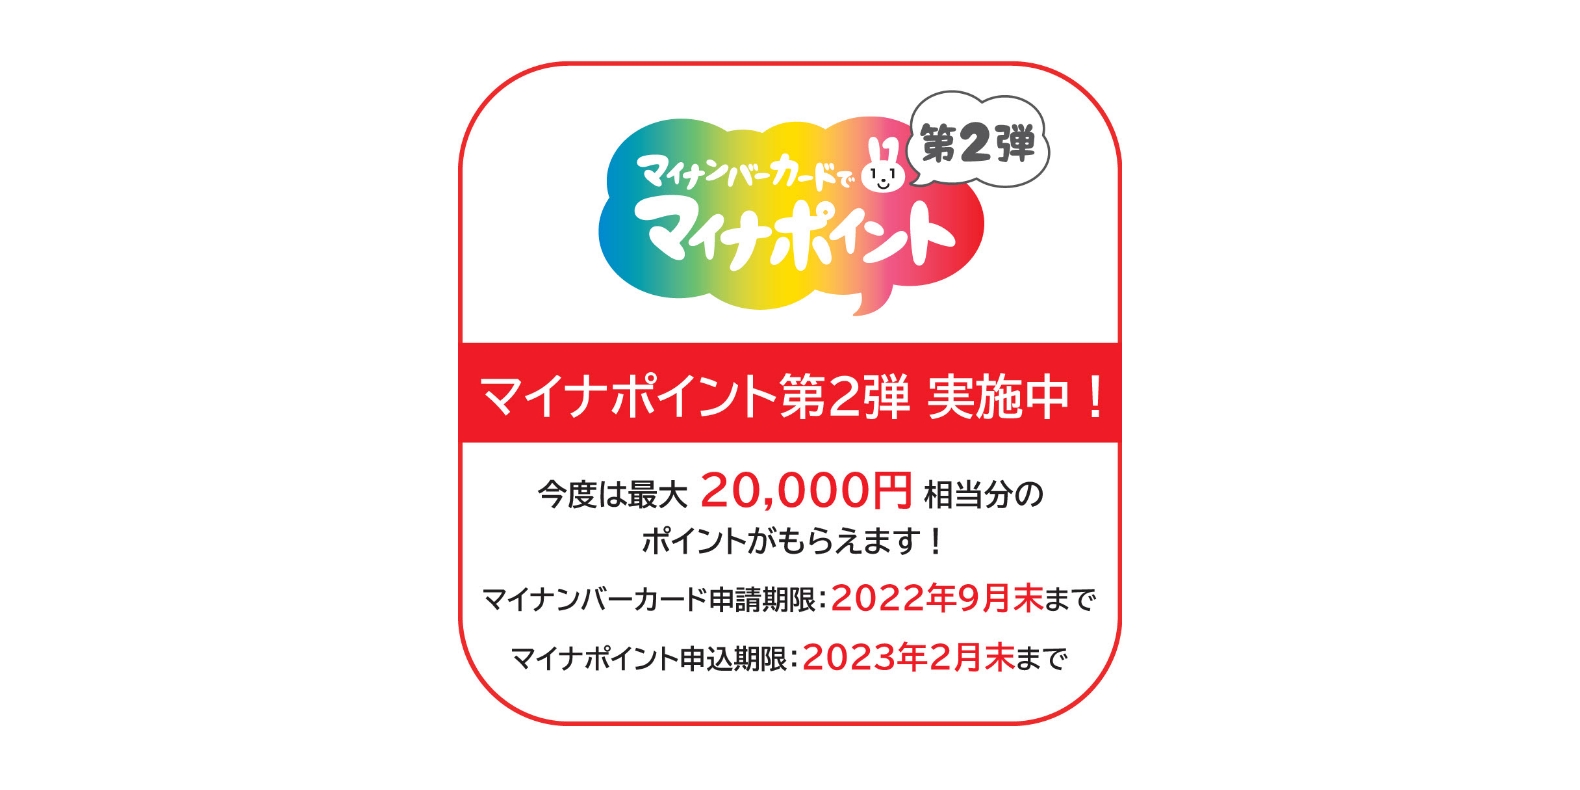 マイナポイント第二弾
                                    実施中ステッカー:今度は最大2万円相当分のポイントがもらえます!